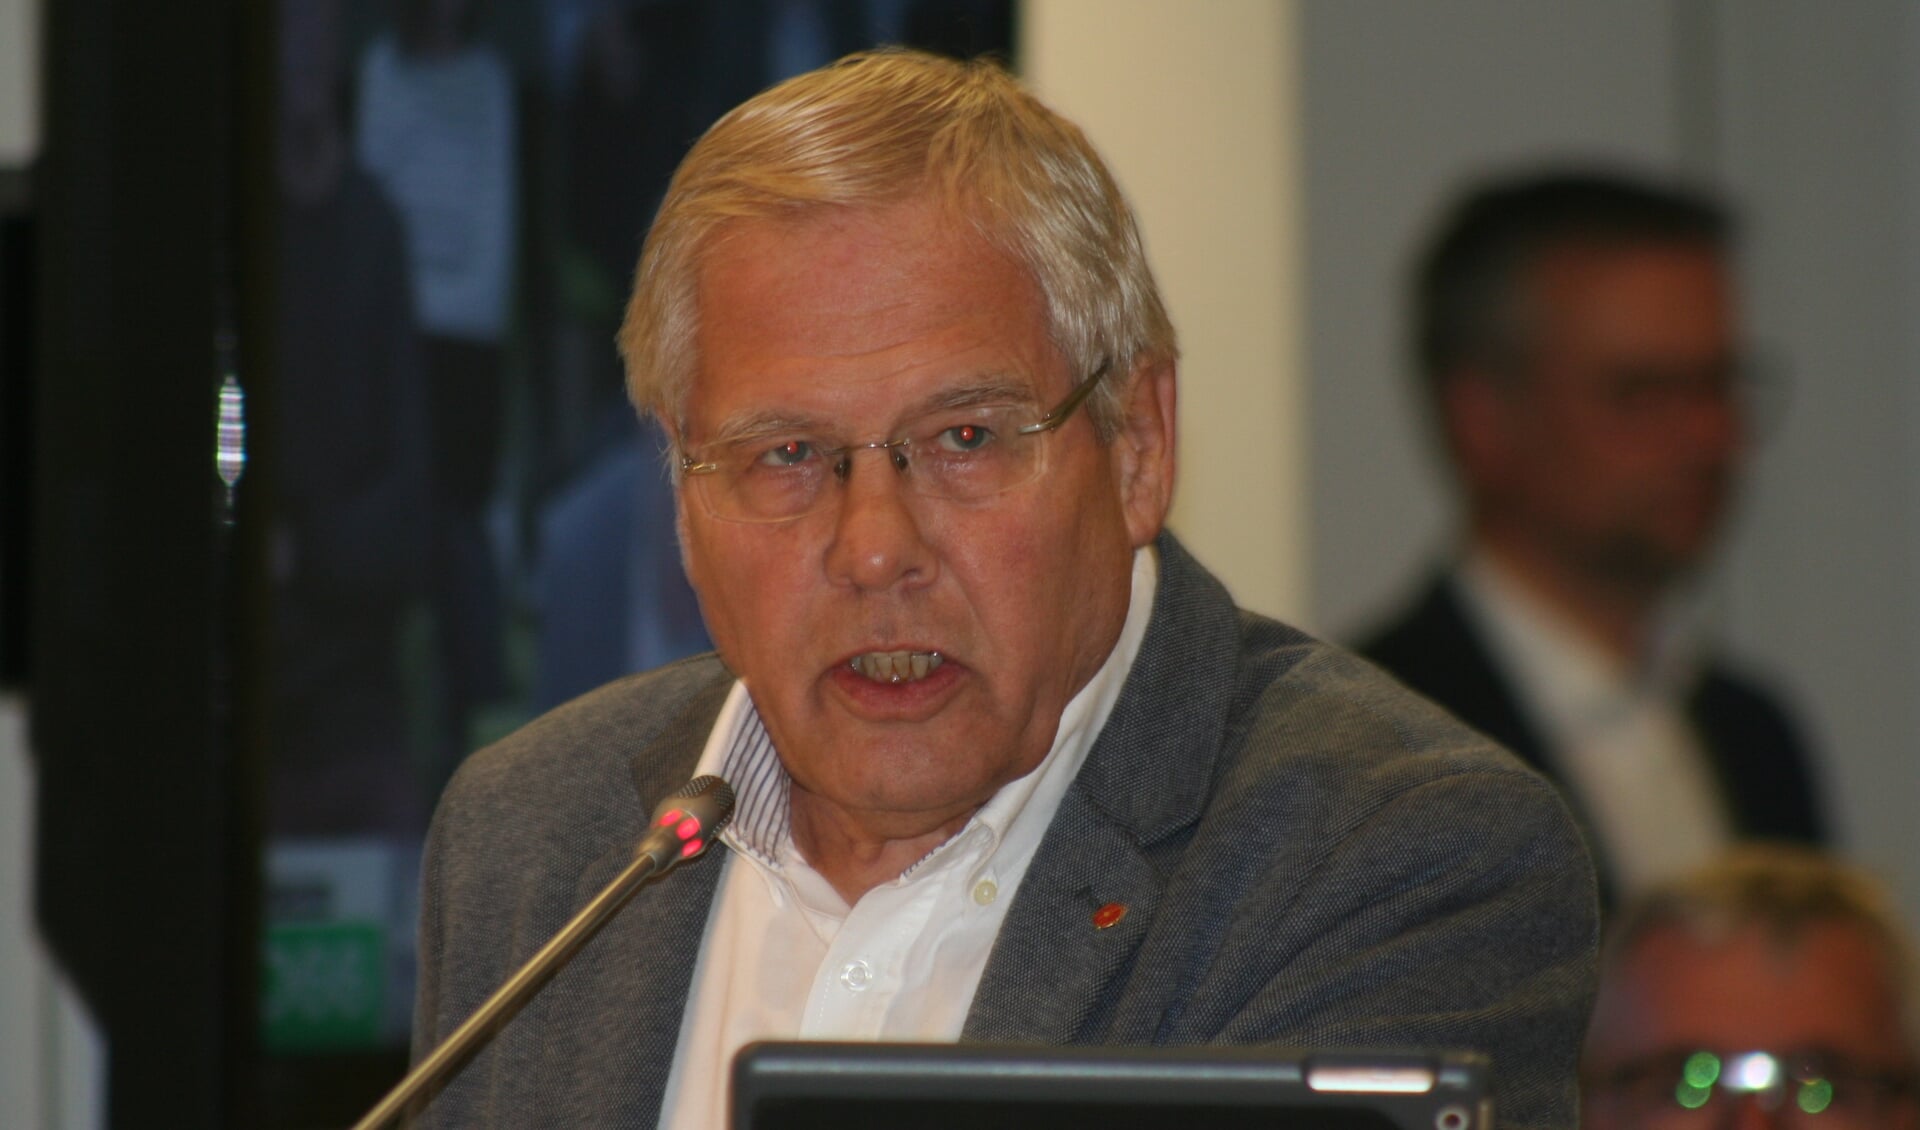 'Rompa hoort niet thuis in een woonkern', zegt Jerry van der Meulen van D66. 